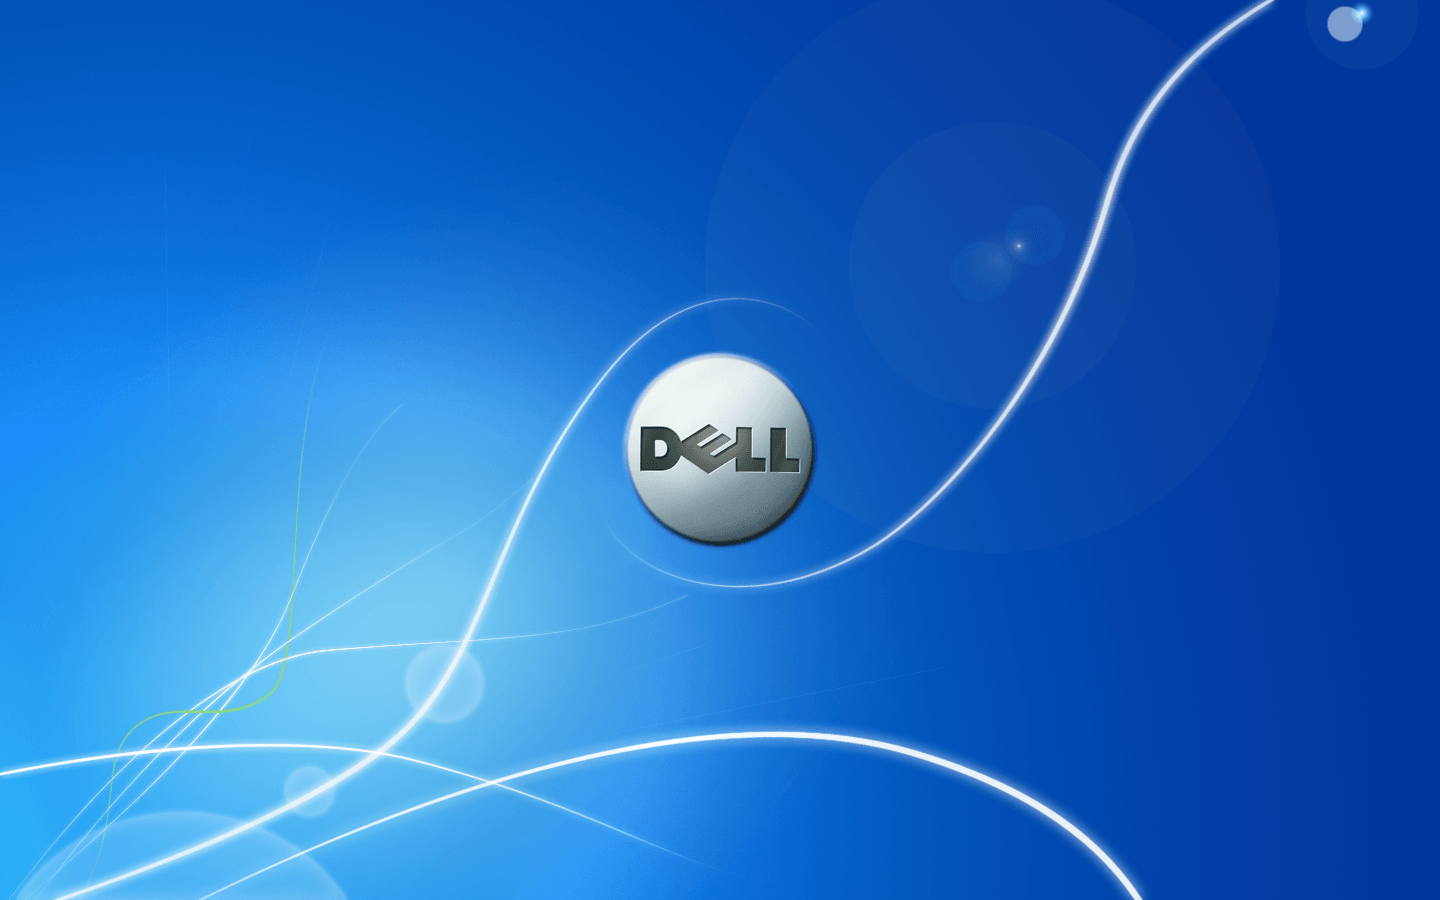 Neuearbeitsweisen, Kreiert Mit Dell Technologies.